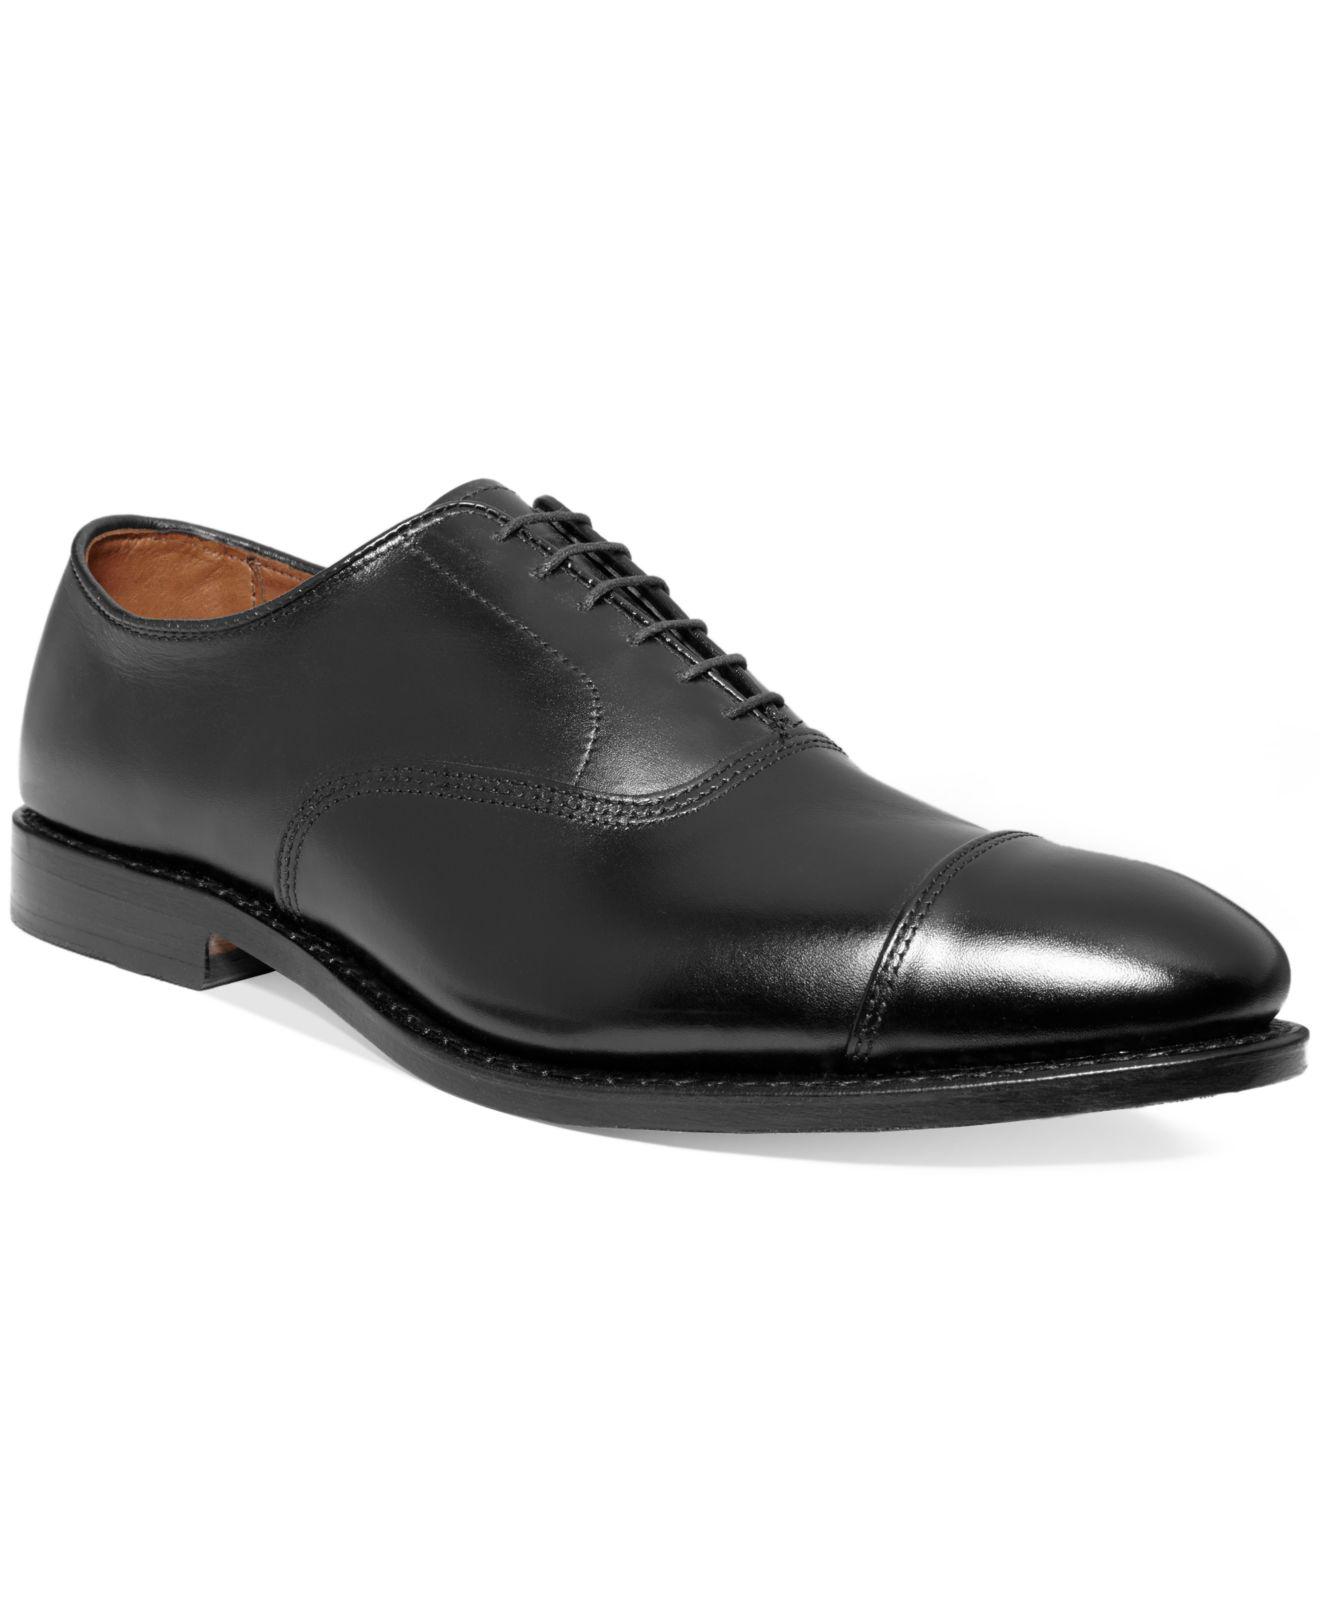 Allen Edmonds Park Avenue Cap-toe Oxfords in Black for Men - Lyst